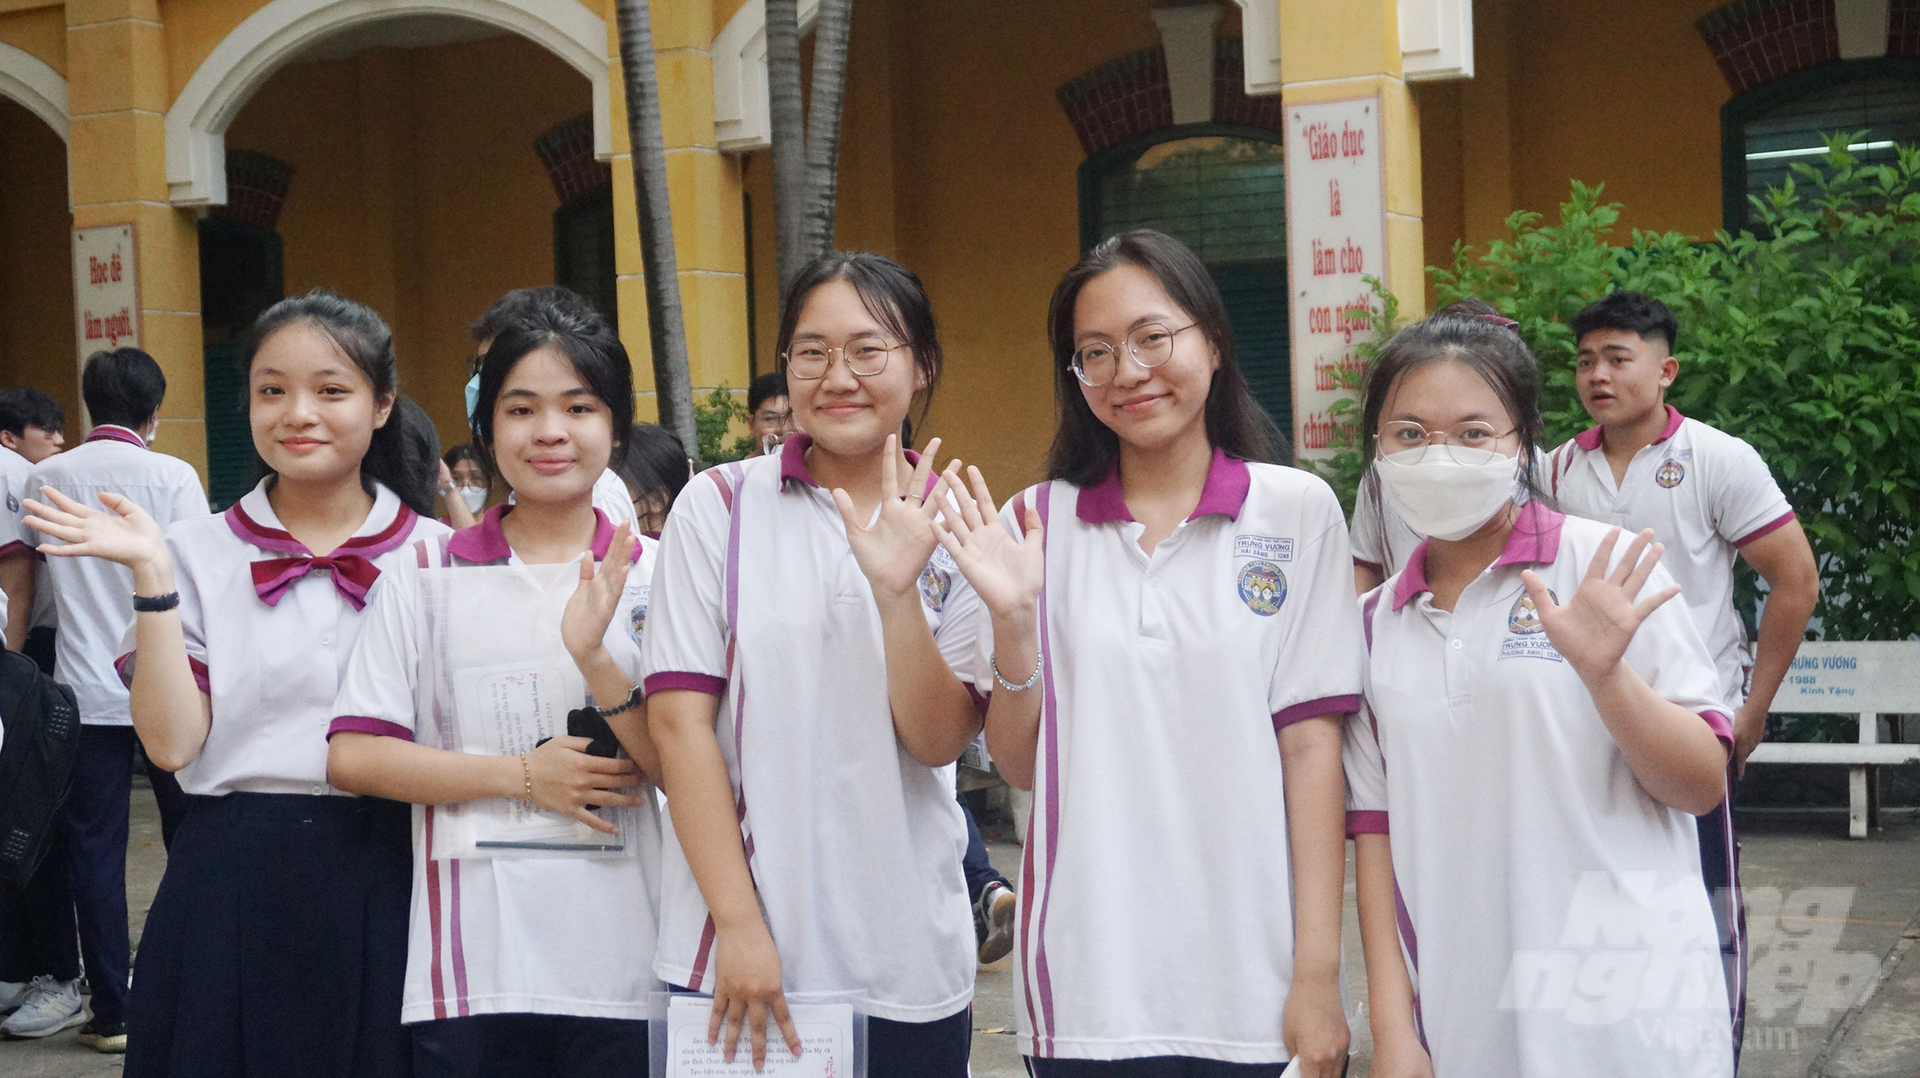 Mai Anh, học sinh lớp 12A11 Trường THPT Trưng Vương cùng các bạn trước khi bước vào Kỳ thi tốt nghiệp THPT. Ảnh: Nguyễn Thủy.